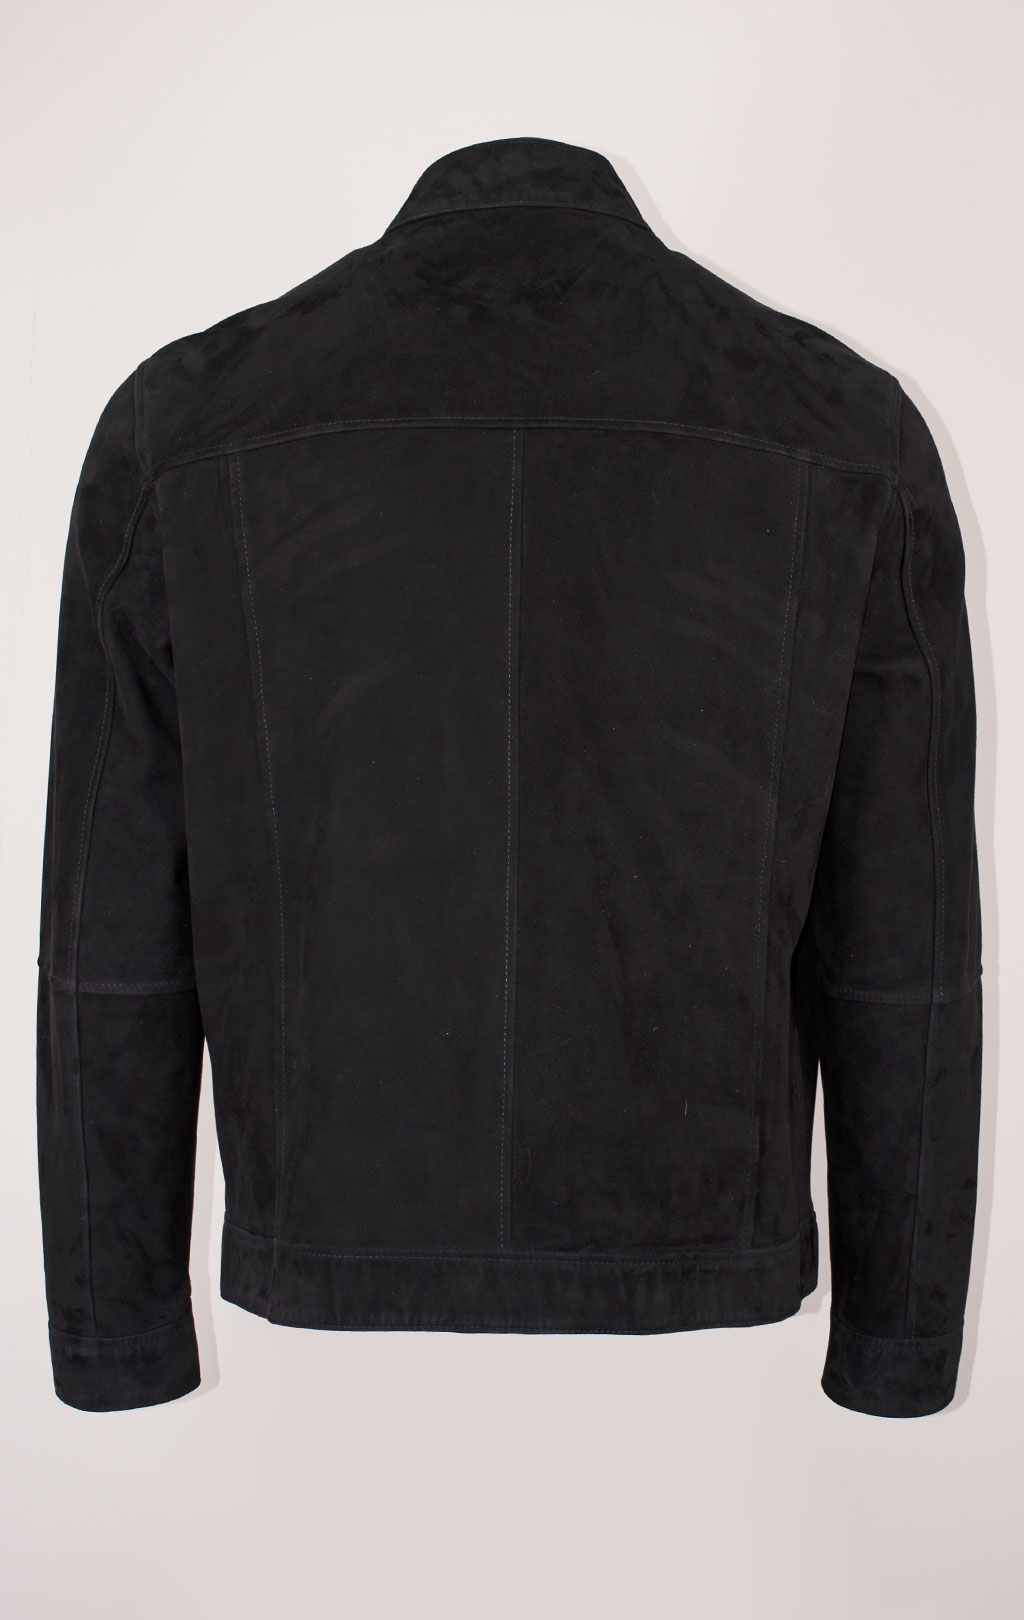 Куртка двухсторонняя KODZIC B-3 кожа/замша black (2050) 